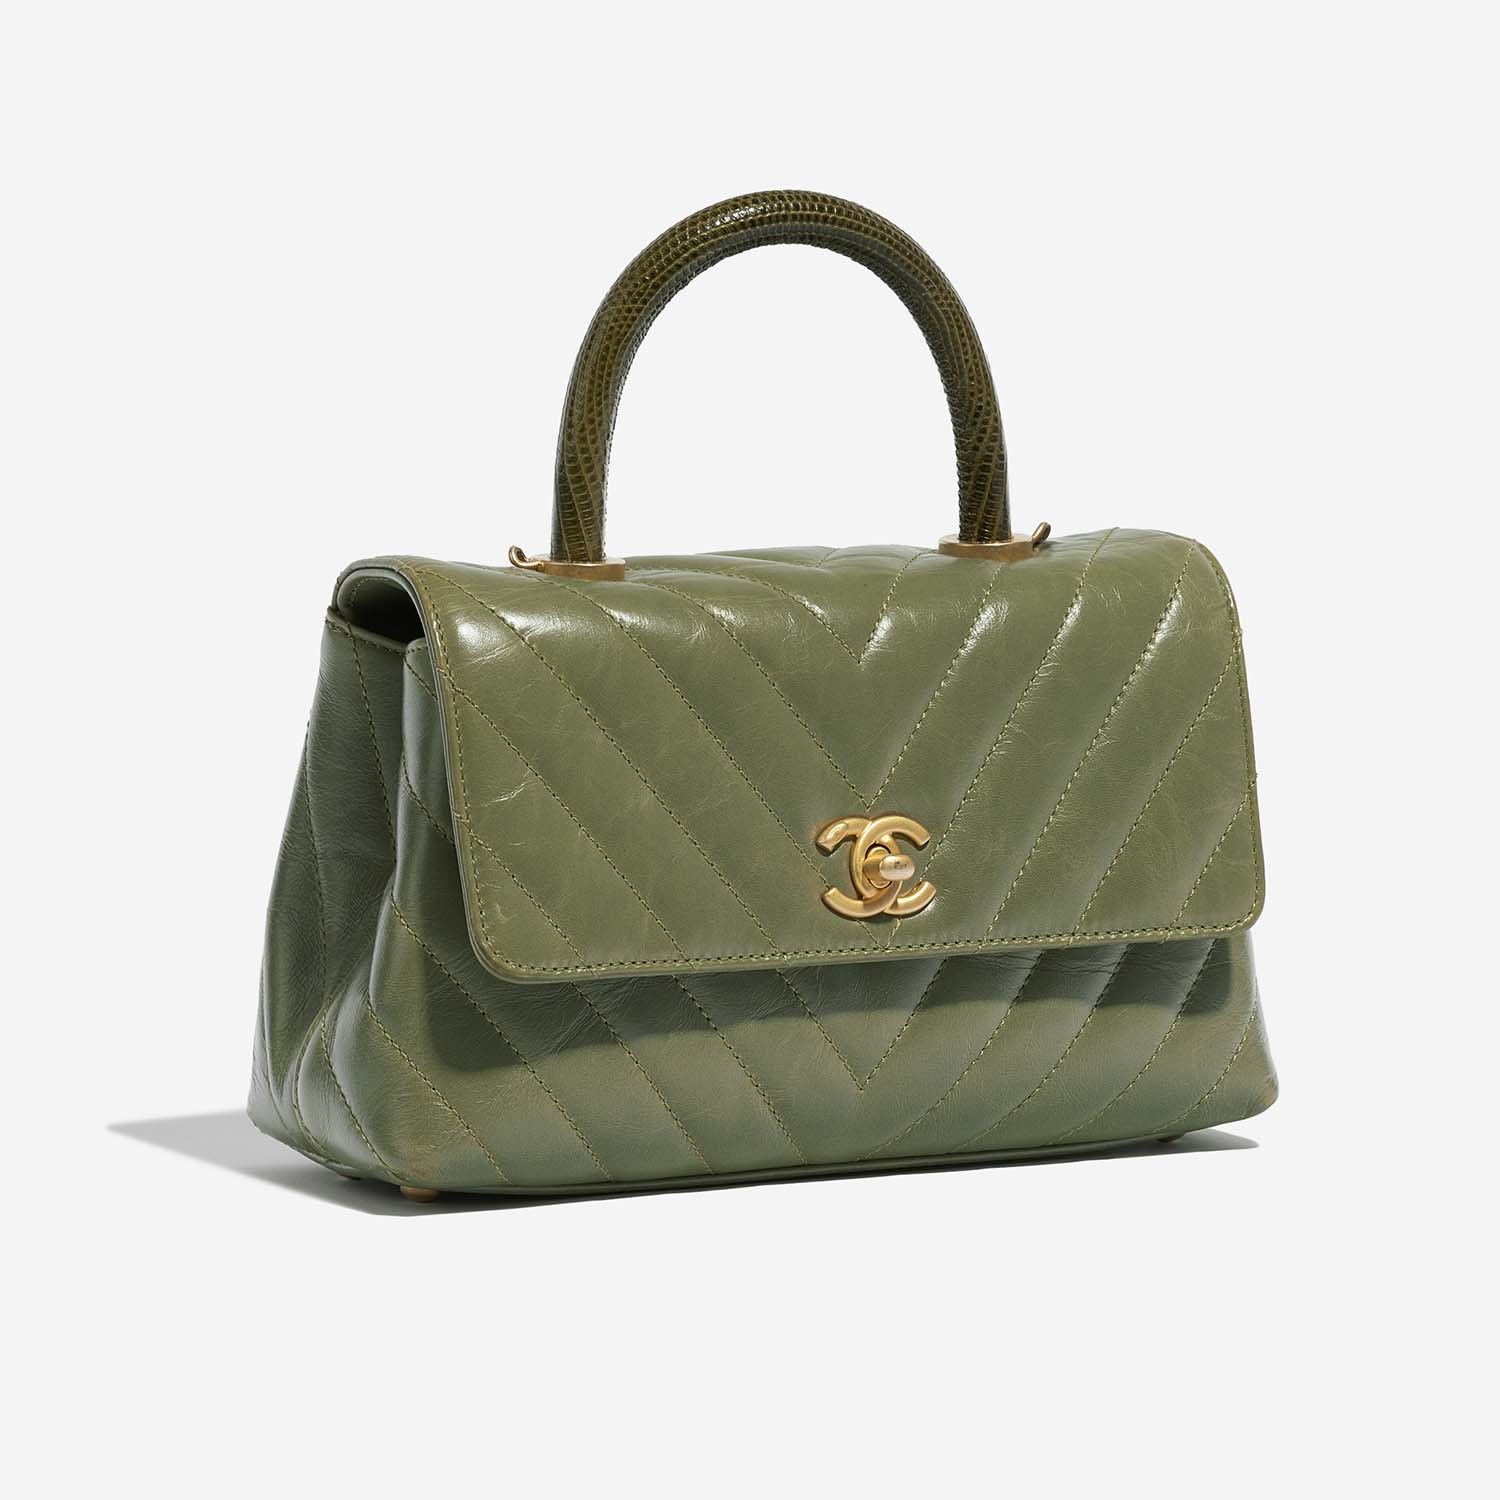 Chanel TimelessHandle Small Green Side Front | Verkaufen Sie Ihre Designer-Tasche auf Saclab.com